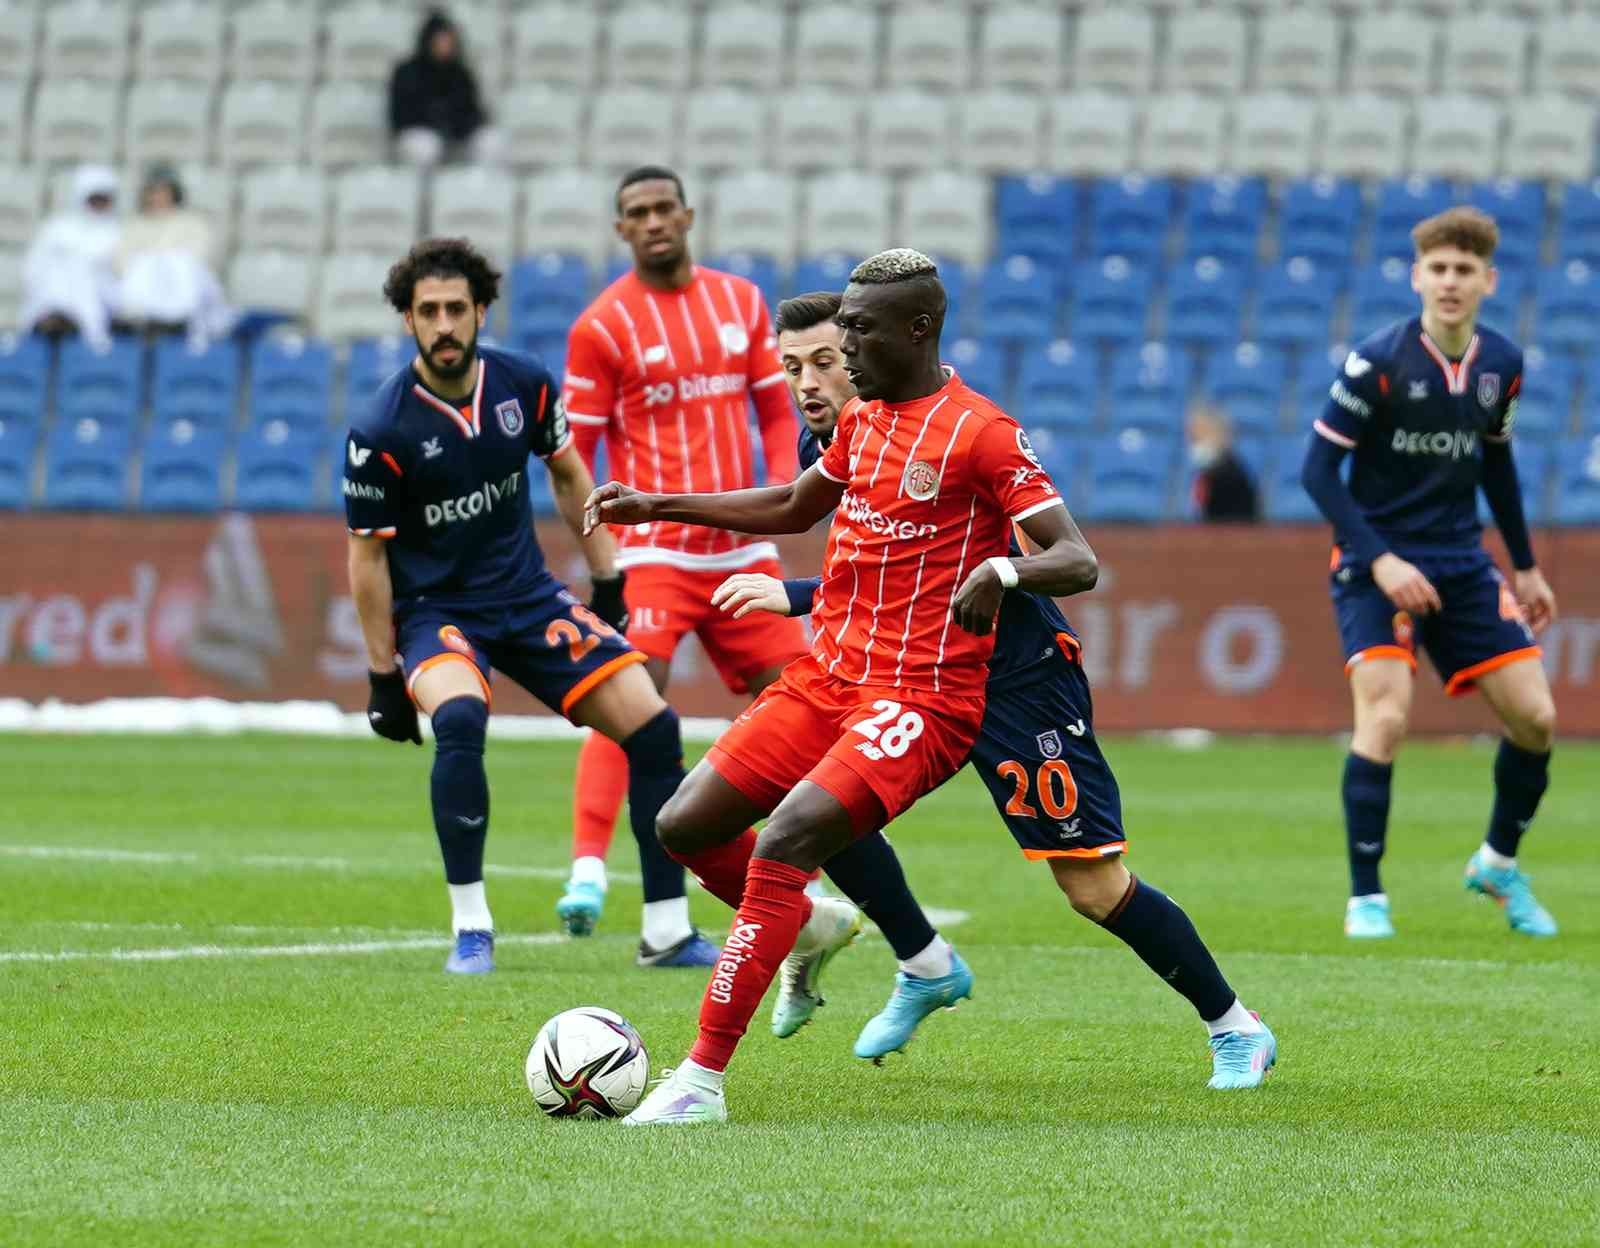 Spor Toto Süper Lig’in 29. haftasında Medipol Başakşehir, Antalyaspor’u ağırlıyor. Mücadelenin ilk yarısı Antalyaspor’un 1-0 üstünlüğü ile ...